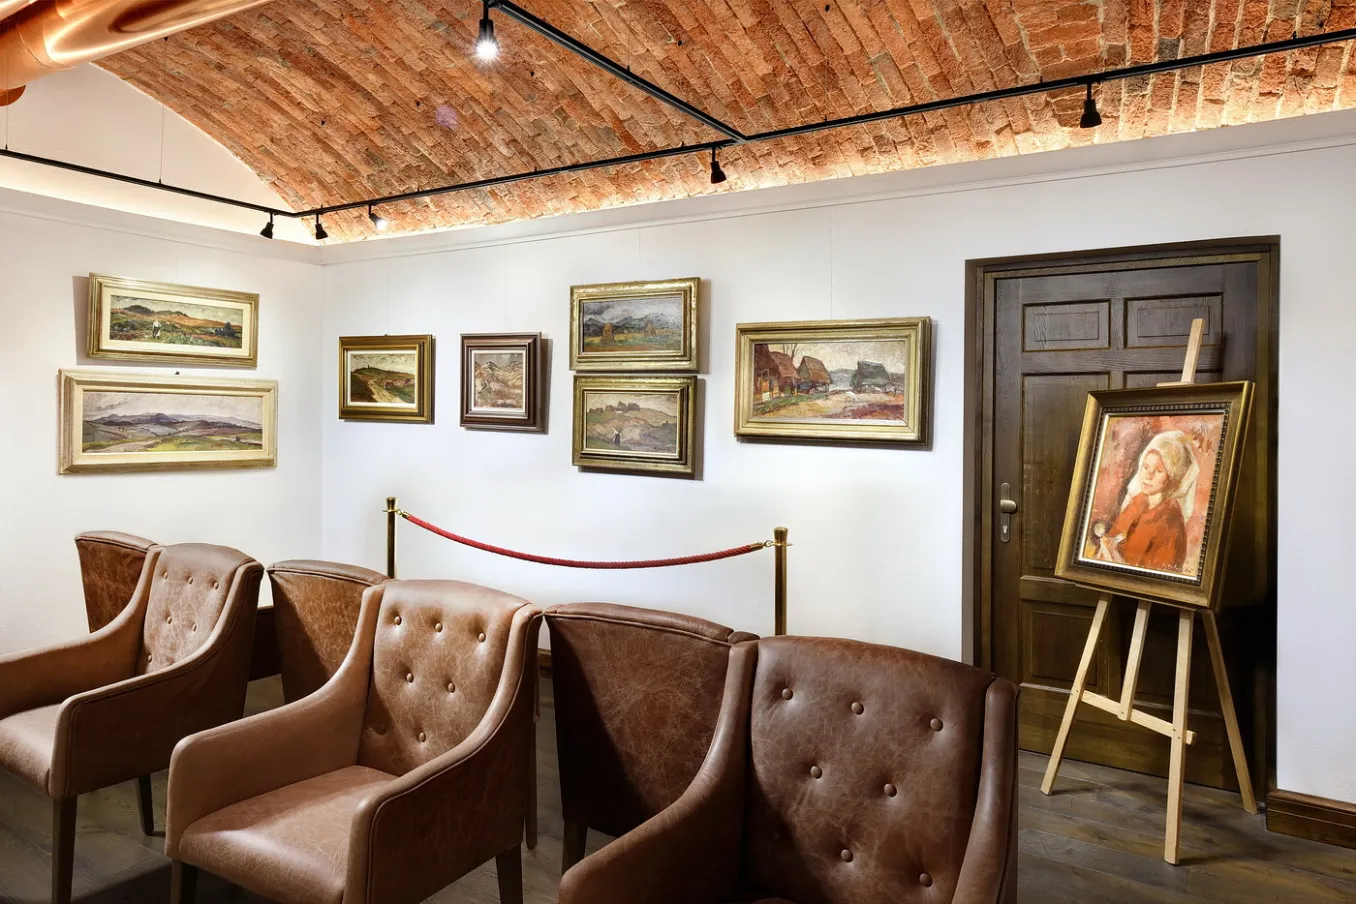 Galéria v Hoteli Lomnica vo Vysokých Tatrách